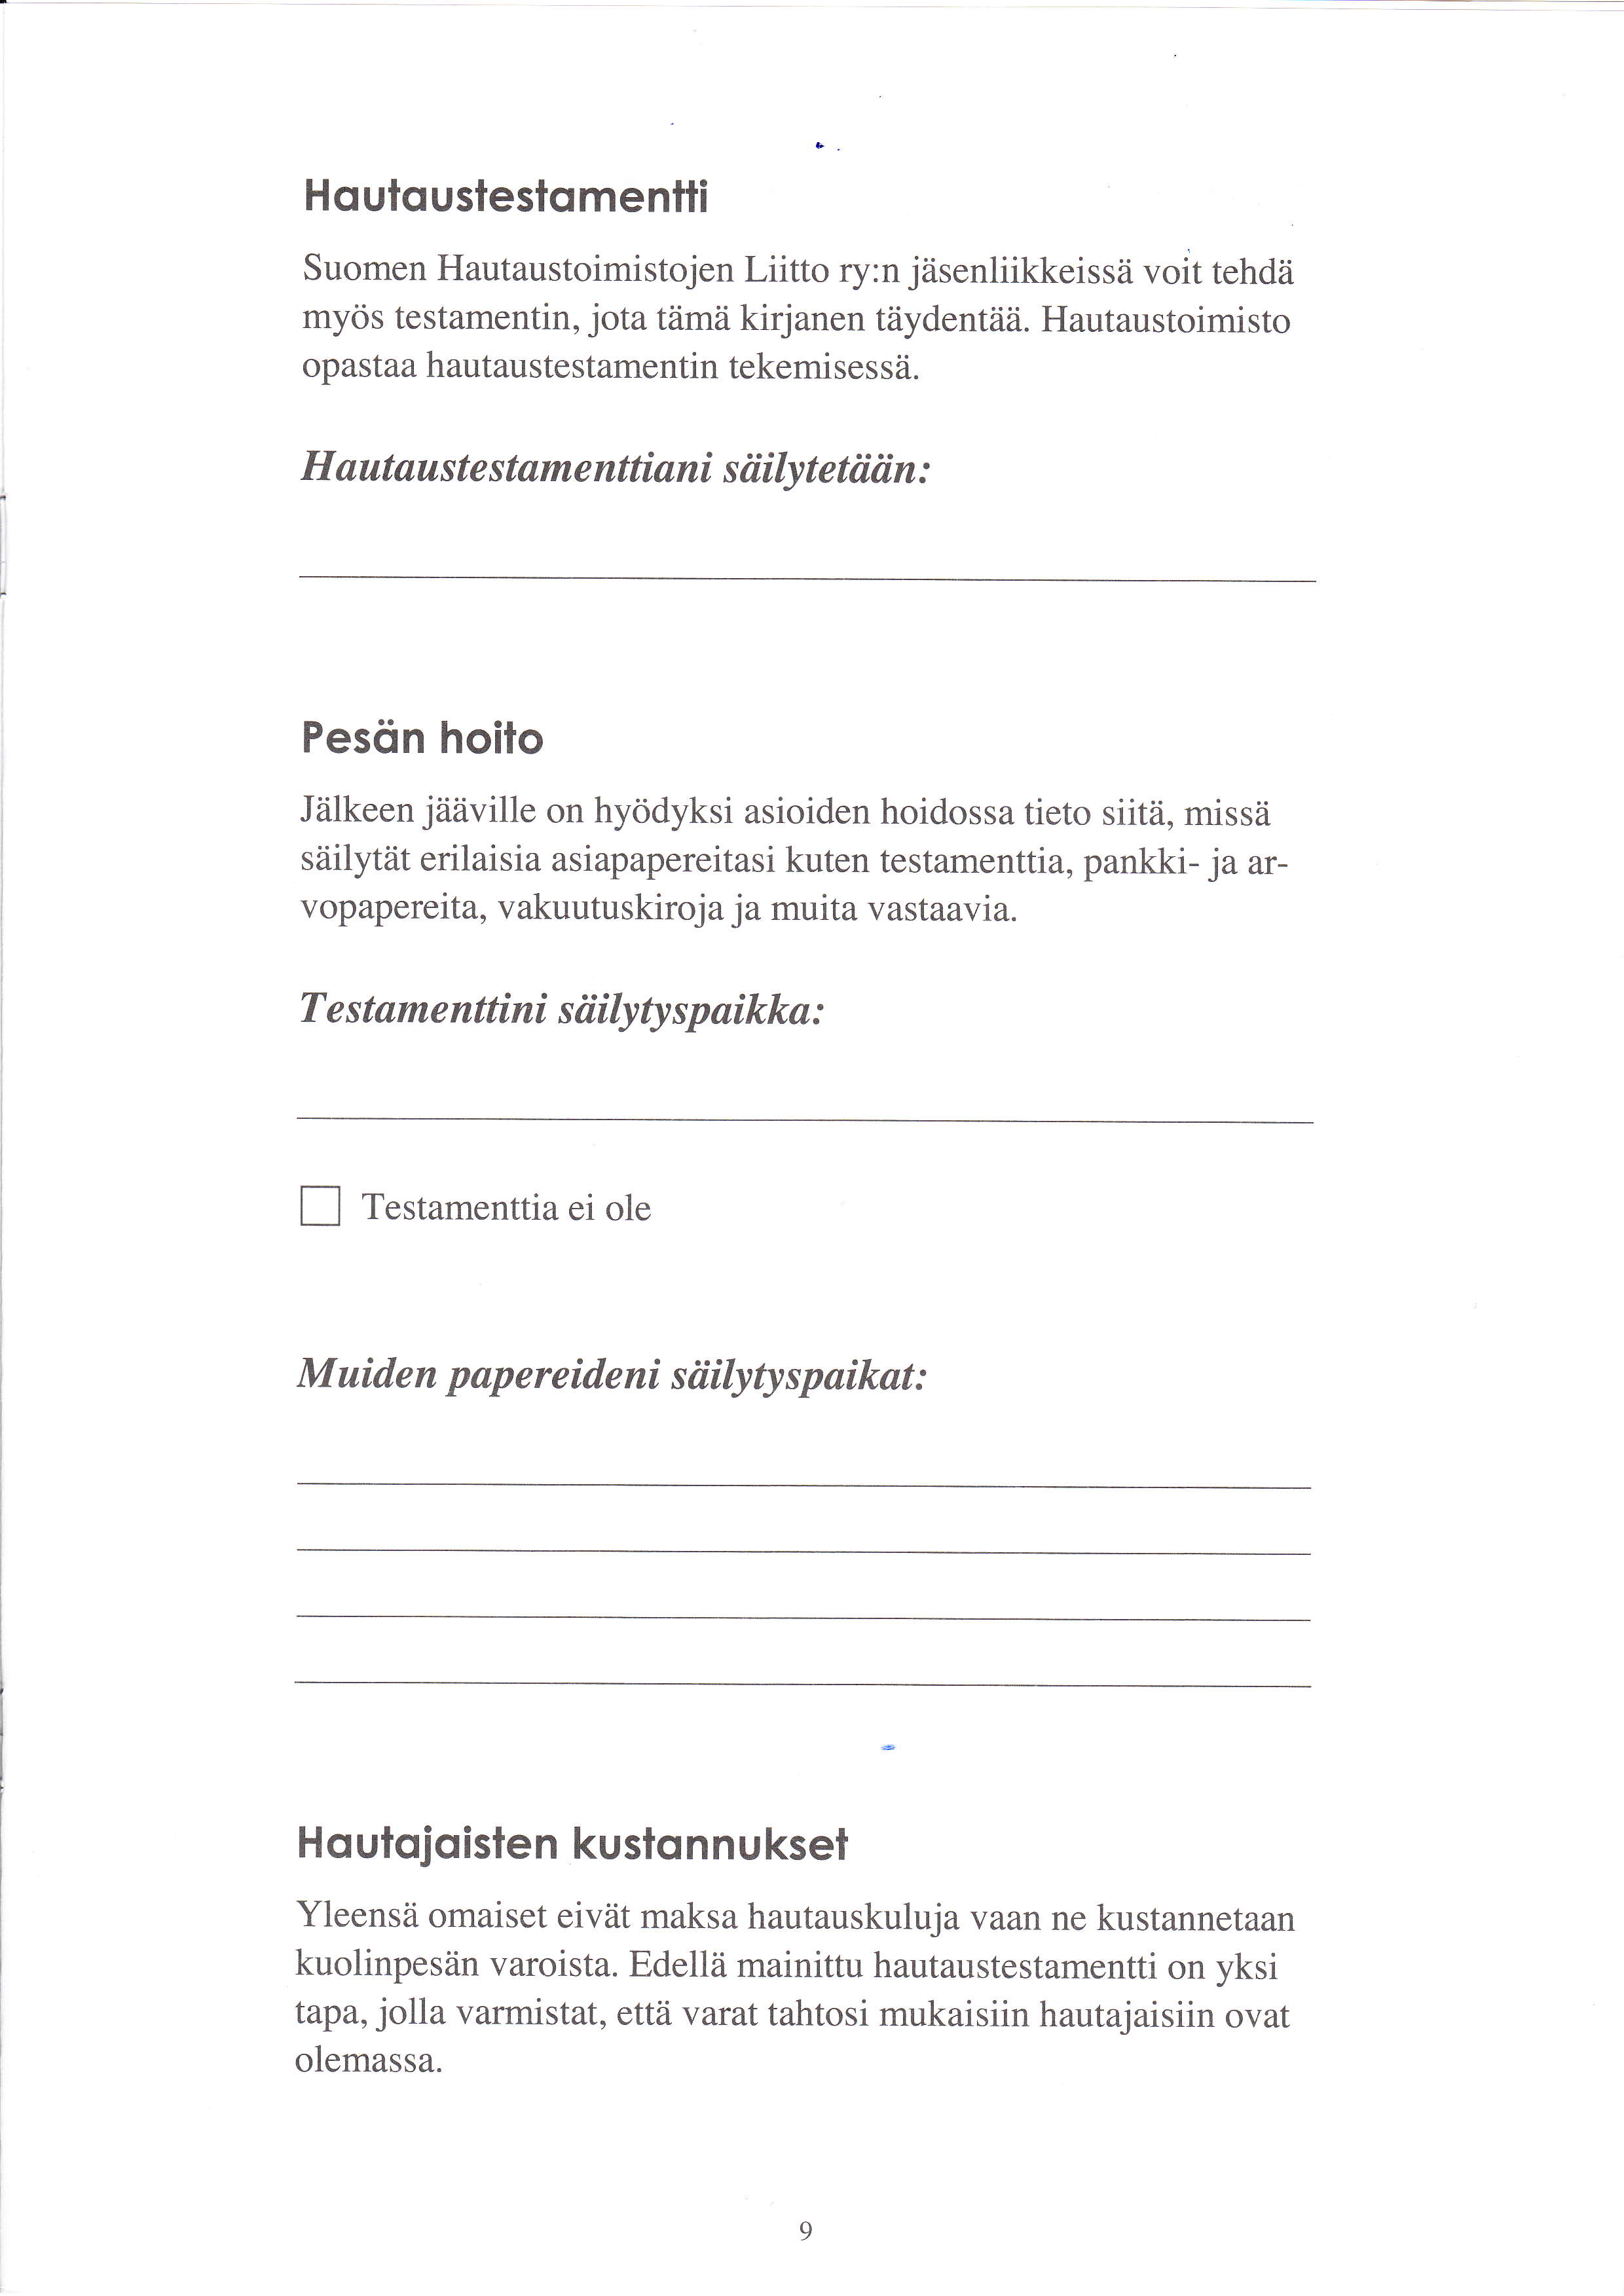 Houloustestomenlli Suomen Hautaustoimistojen Liitto ry:n jäsenliikkeissä voit tehdä myös testamentin, jota tämä kirjanen täydentää. Hautaustoimisto opastaa hautaustestamentin tekemises sä.